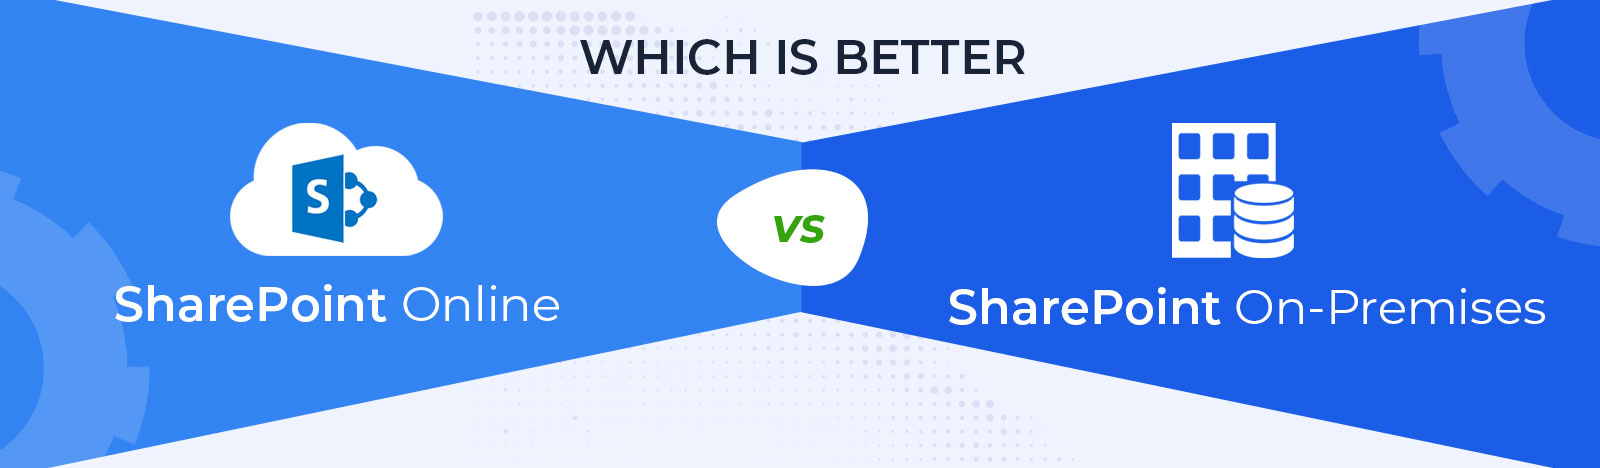 SharePoint-Online-VS-SharePoint-On-Premises